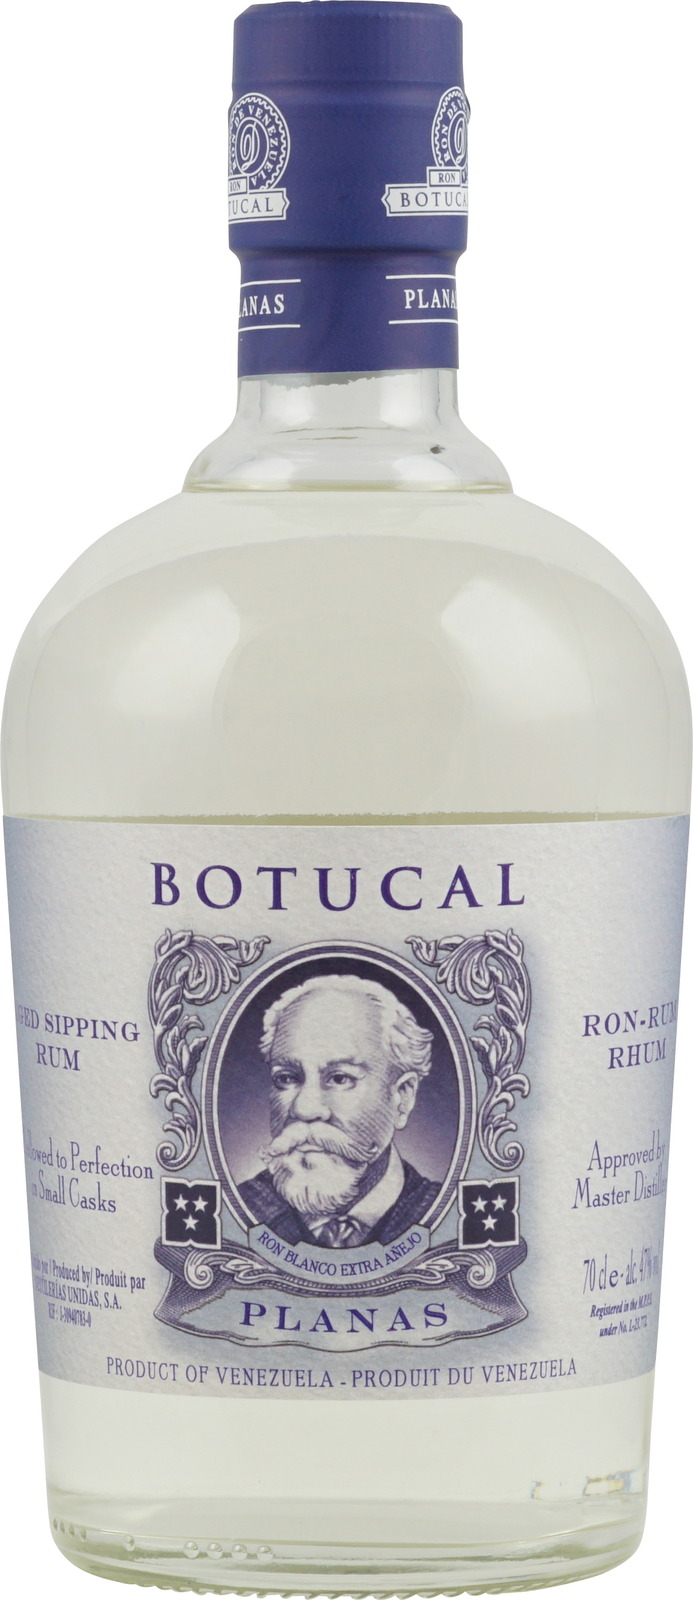 Botucal Planas Rum aus Venezuela hier im Shop kaufen